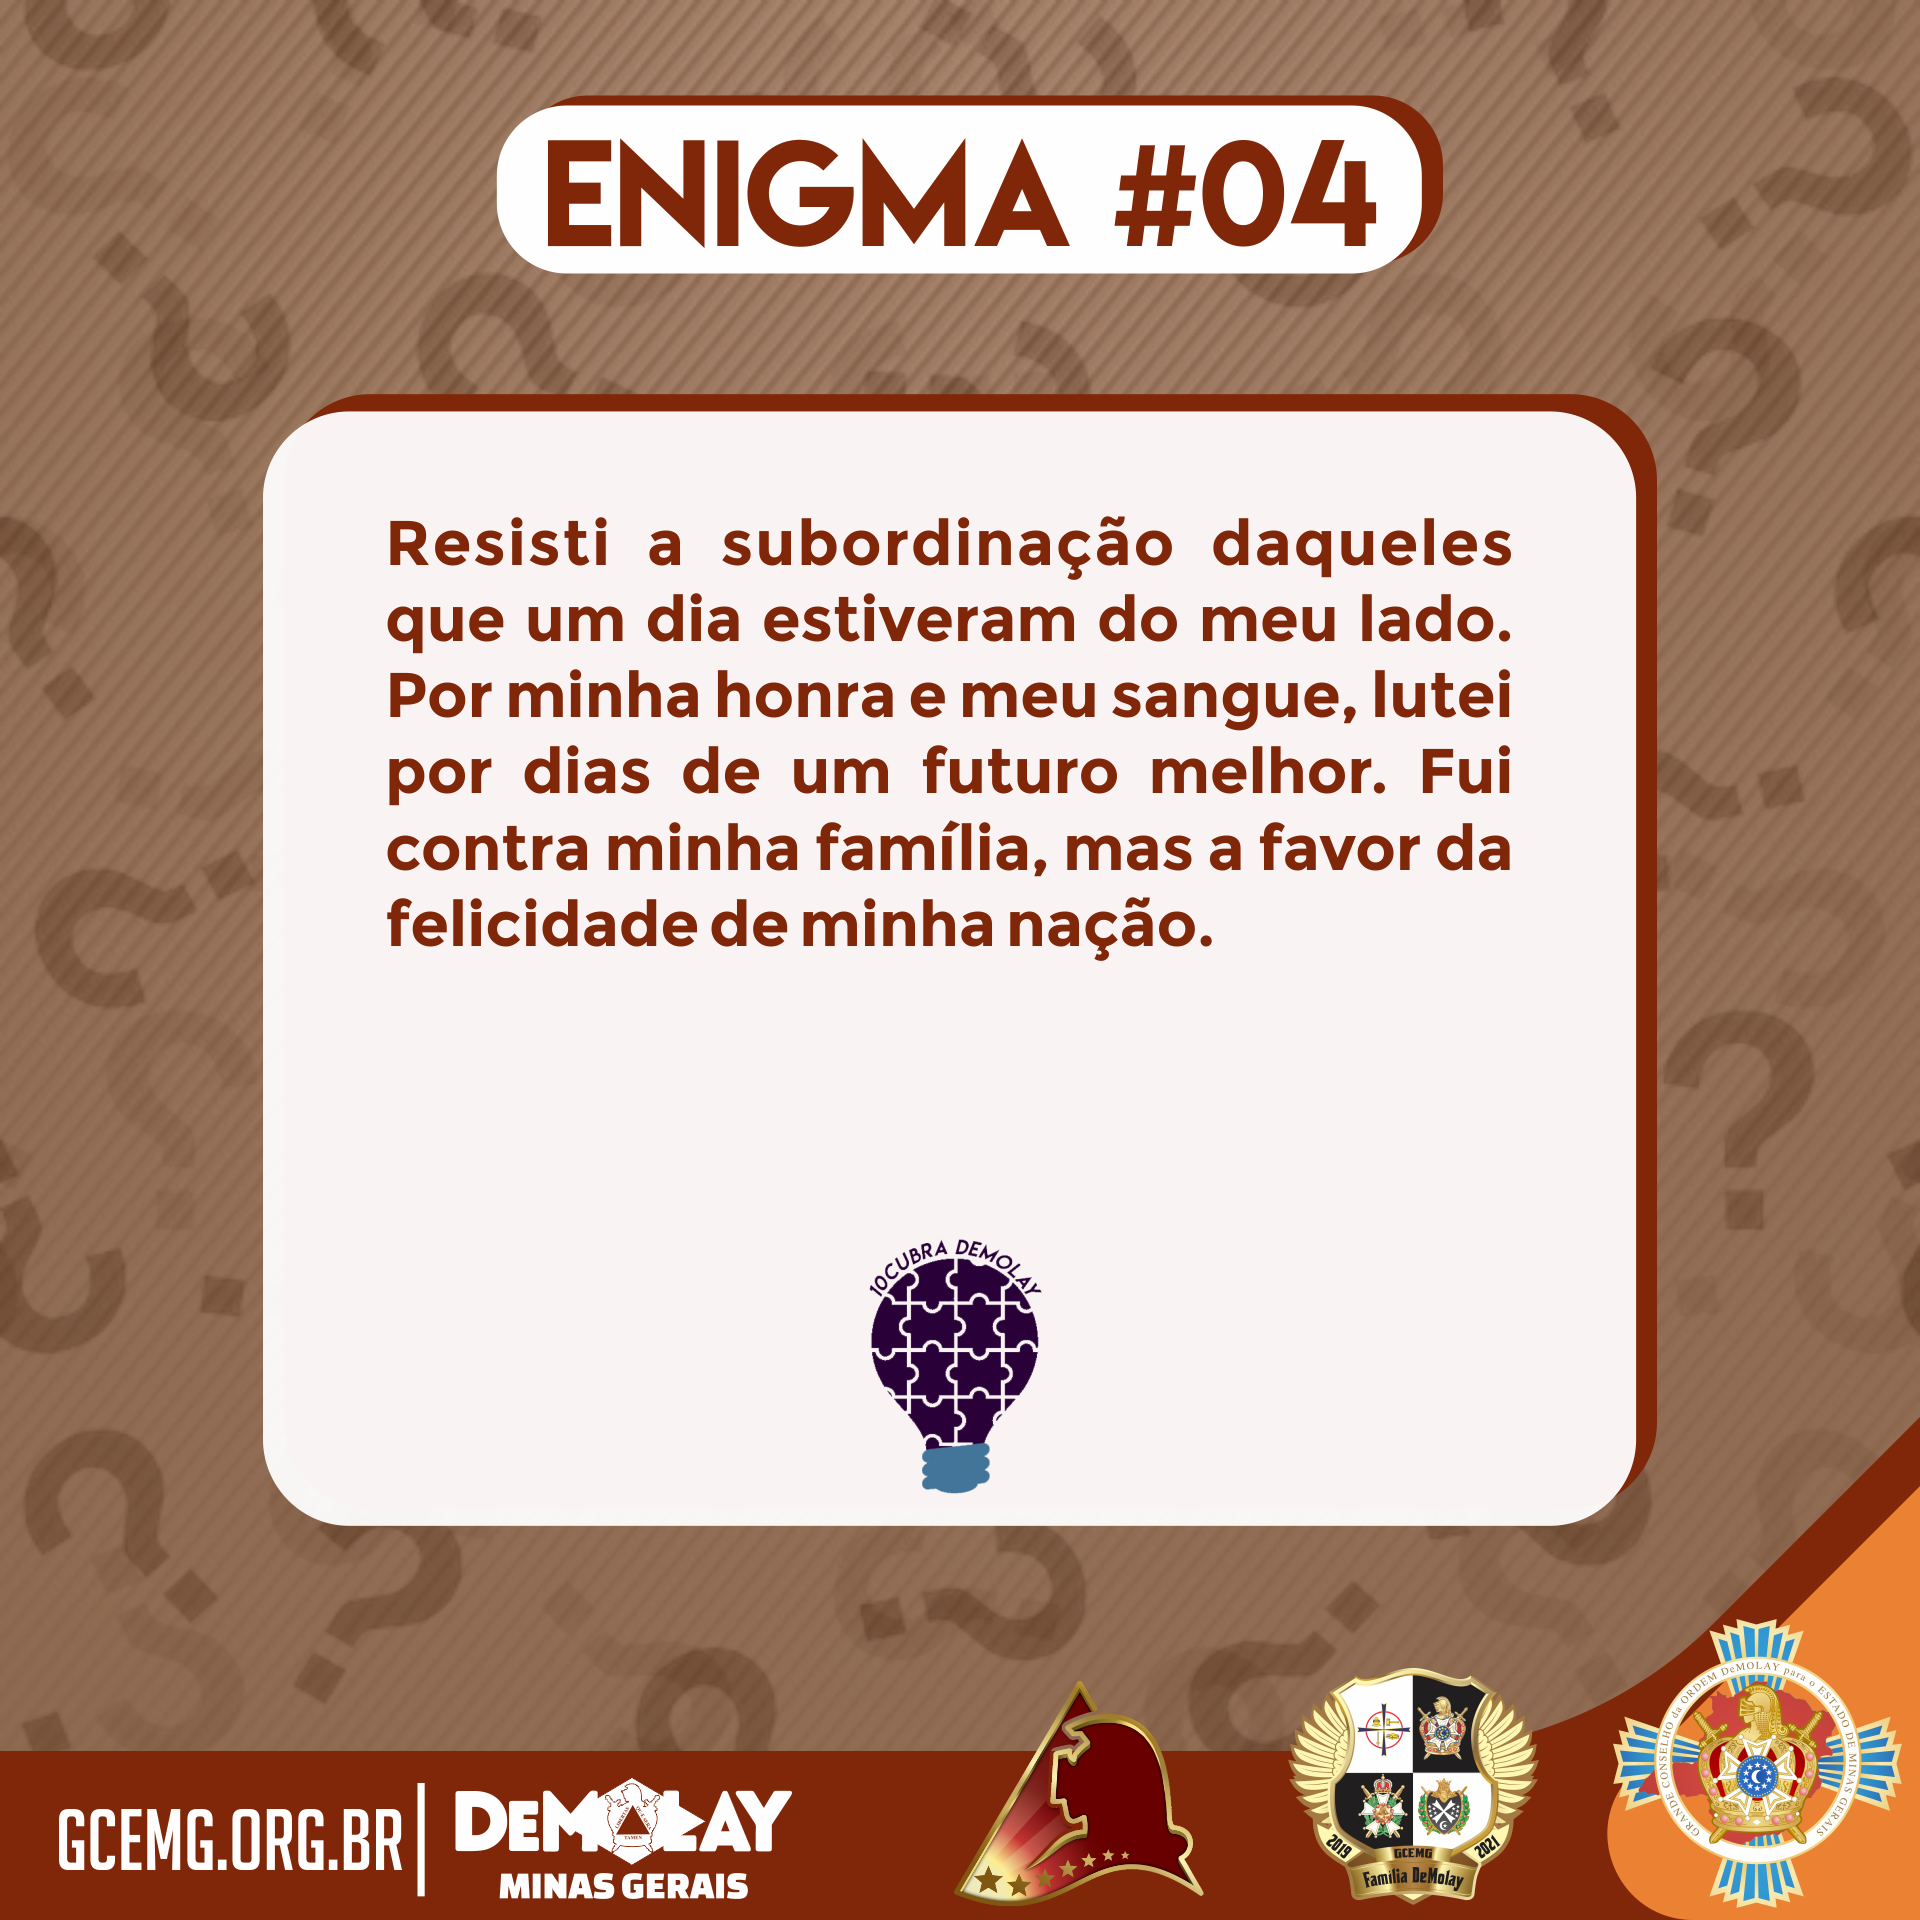 10cubra DeMolay: Enigma #04